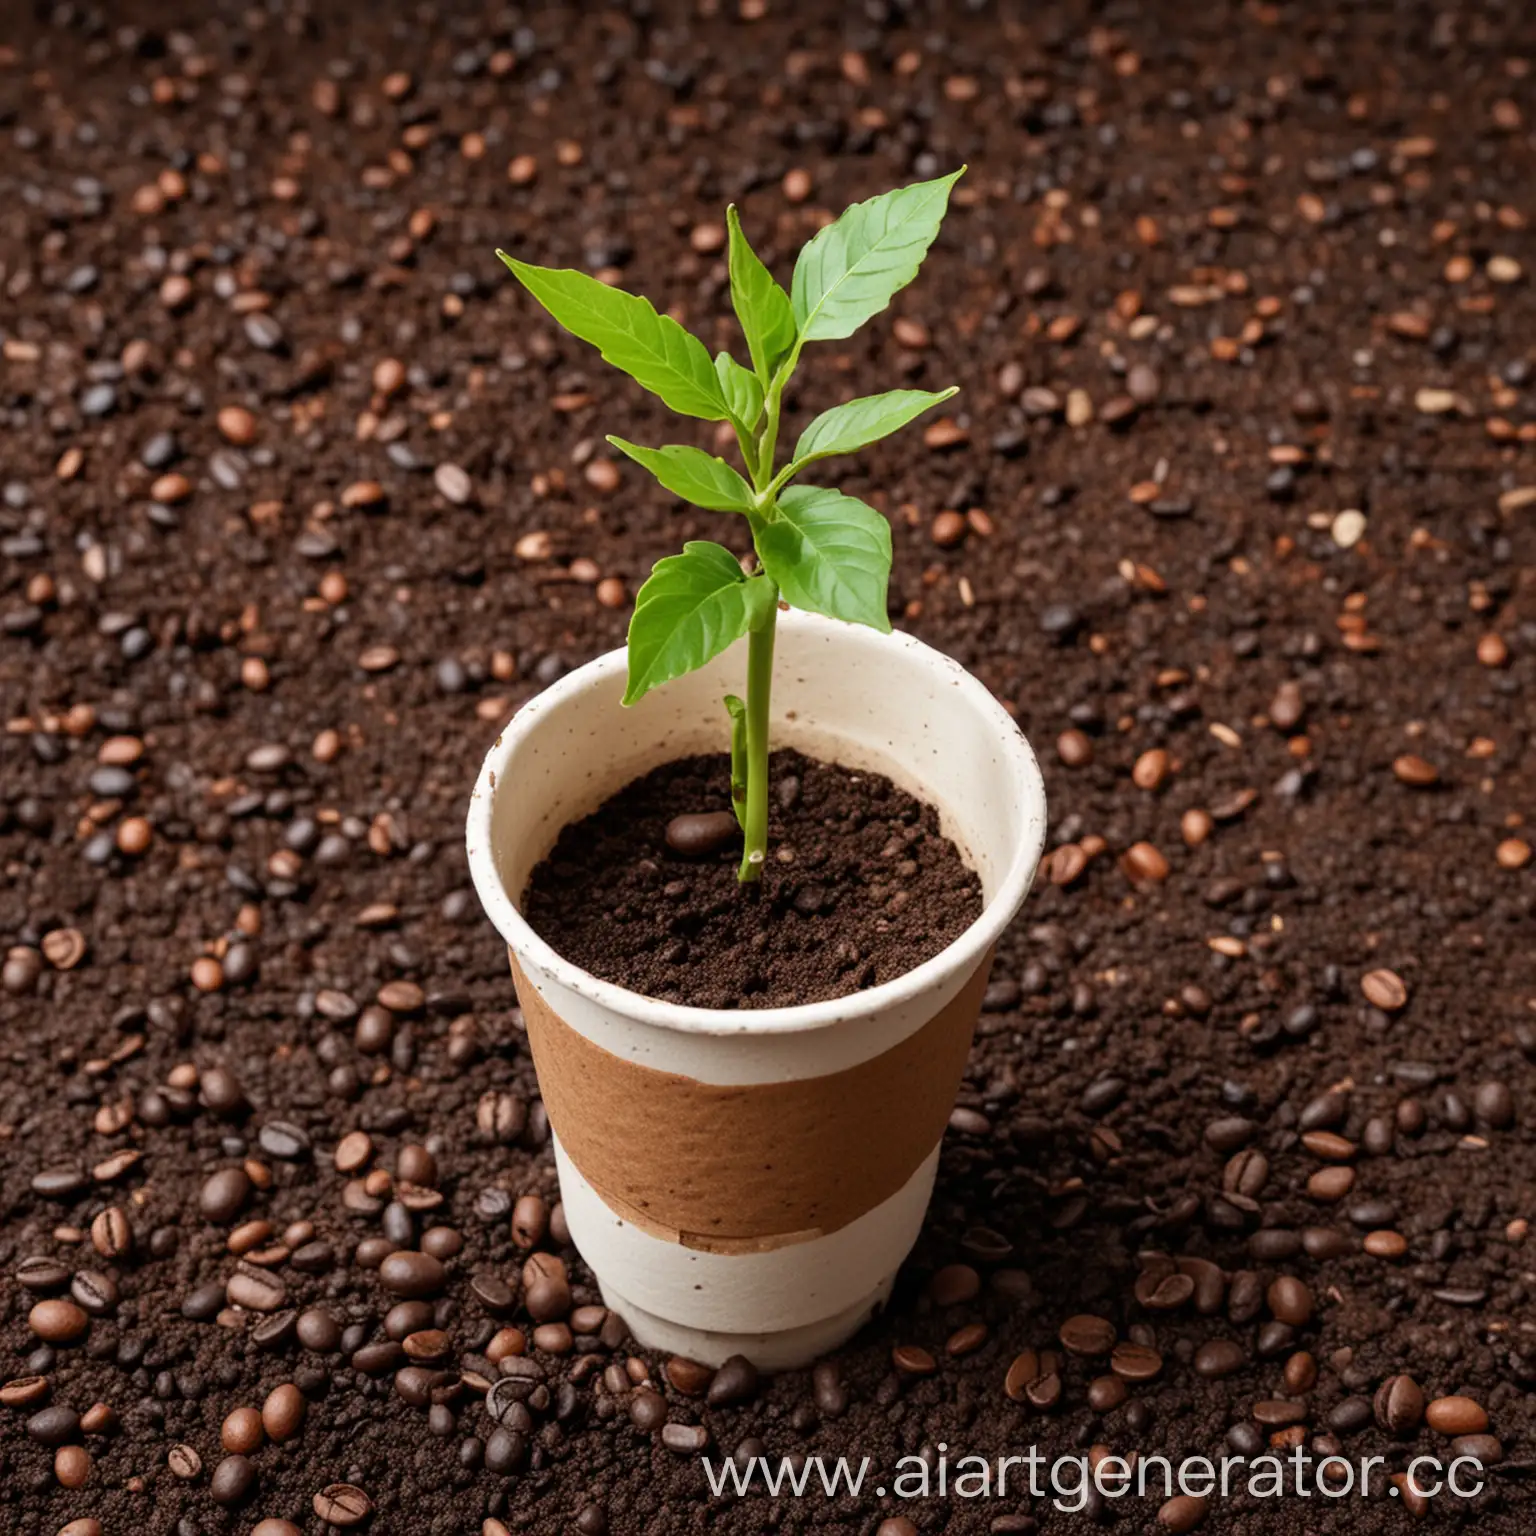 Одноразовый стаканчик для кофе с семенами растений внутри. После использования его можно посадить в землю, и из него вырастет растение. Стакан изготовлен из биоразлагаемого материала.